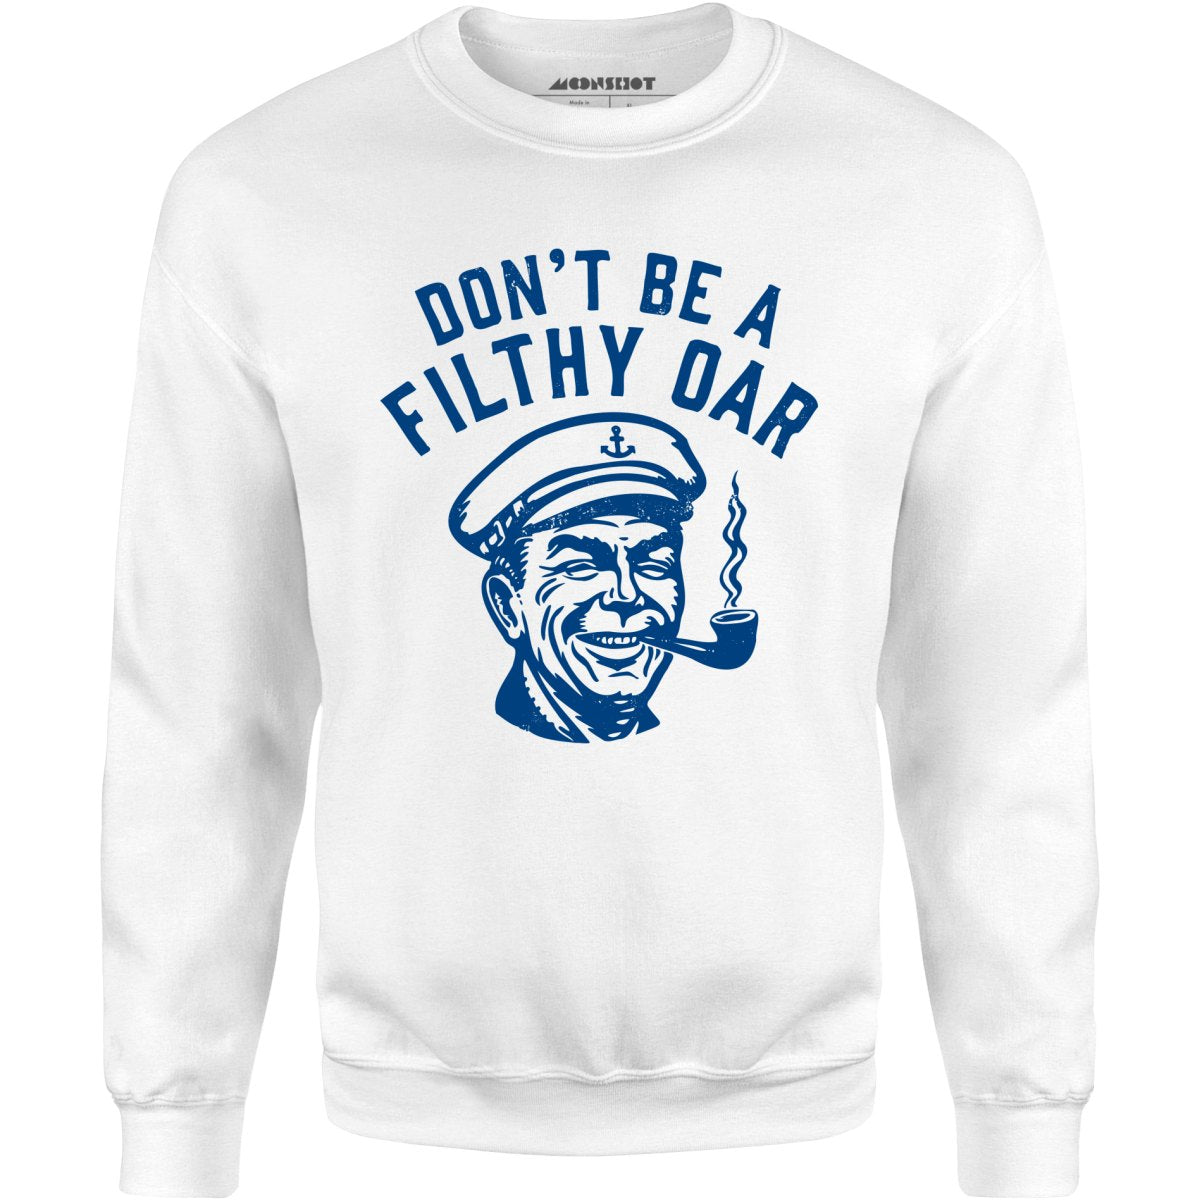 Don't Be a Filthy Oar - Unisex Sweatshirt